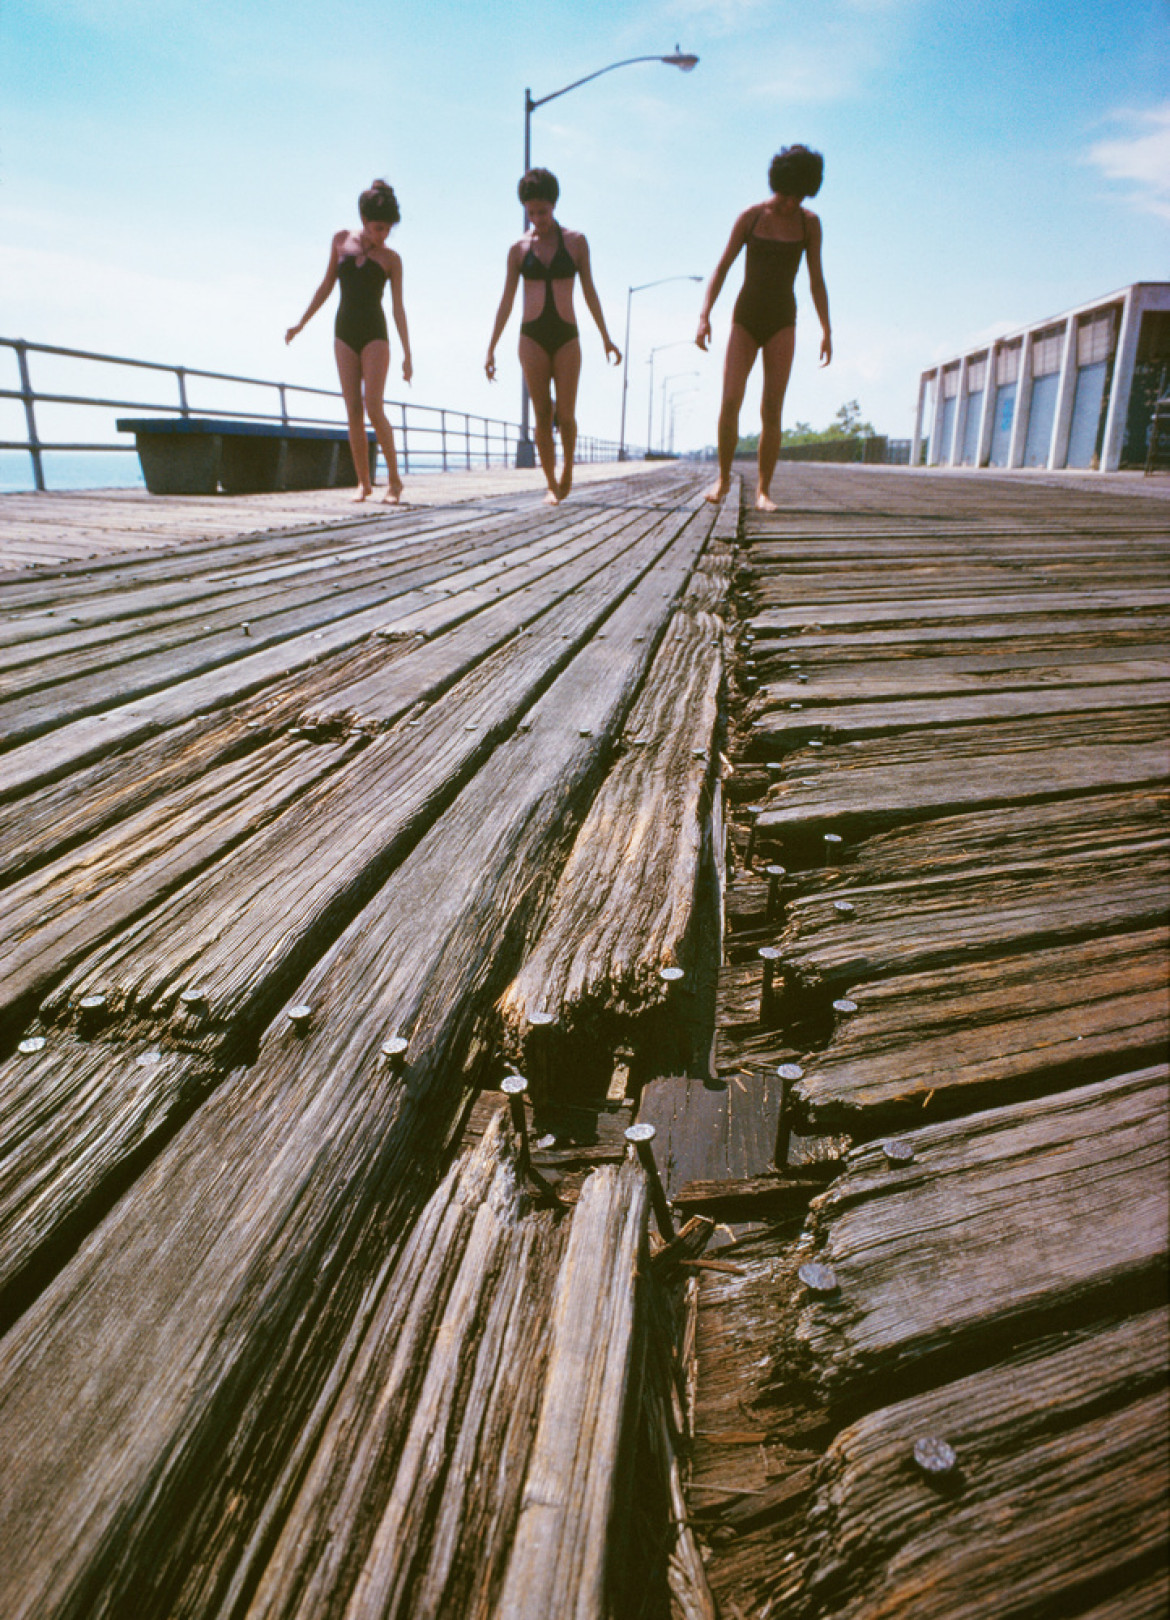 fot. Neal Boenzi, "Girls on Splintered Boardwalk", South Beach / NYC Park Photo Archive